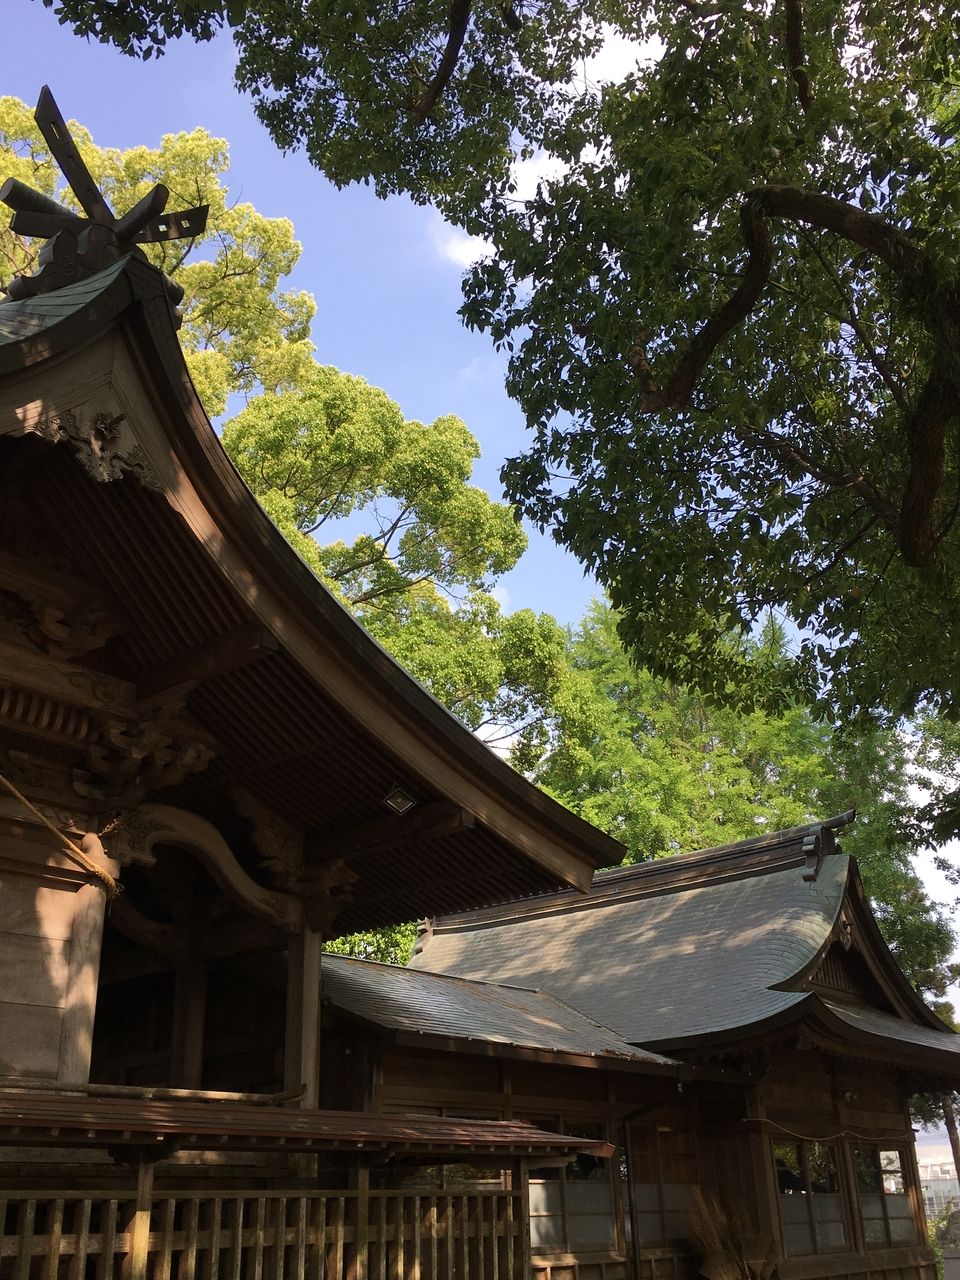 熊本市東区の沼山津神社のエネルギー溢れる新緑の中に佇む本殿